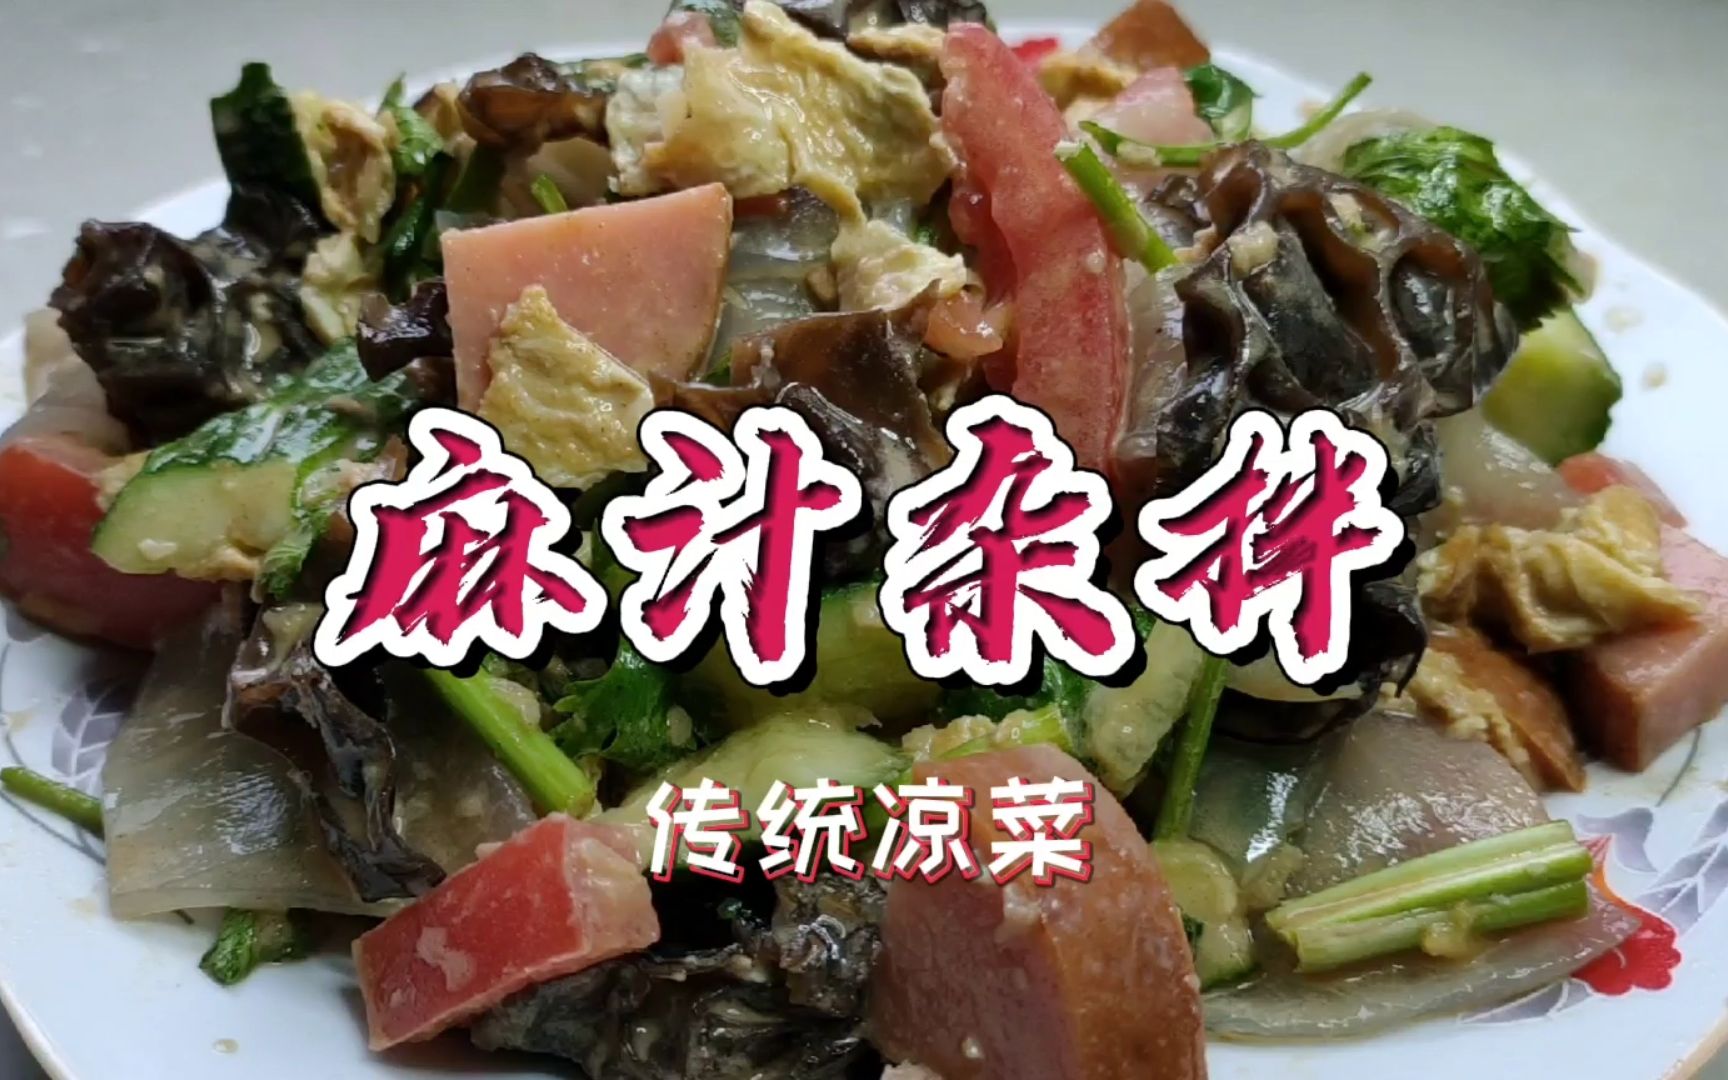 活动作品潍县传统特色凉菜麻汁杂拌吃起来清凉爽口营养美味